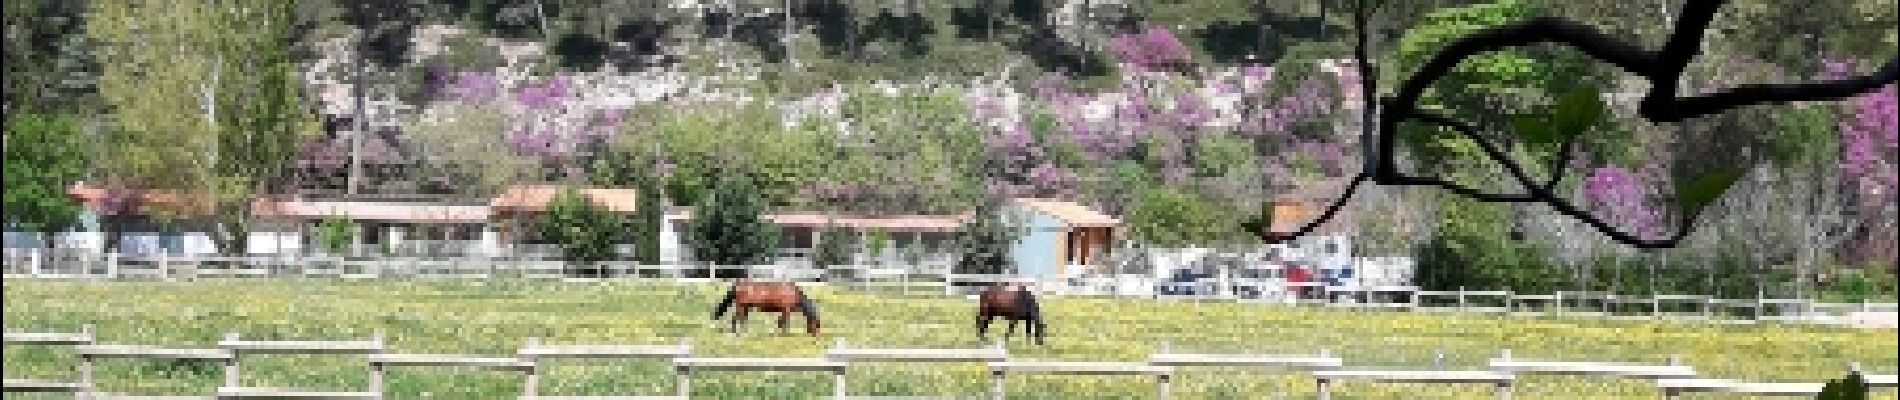 Point of interest Gémenos - les chevaux des garde du parc - Photo